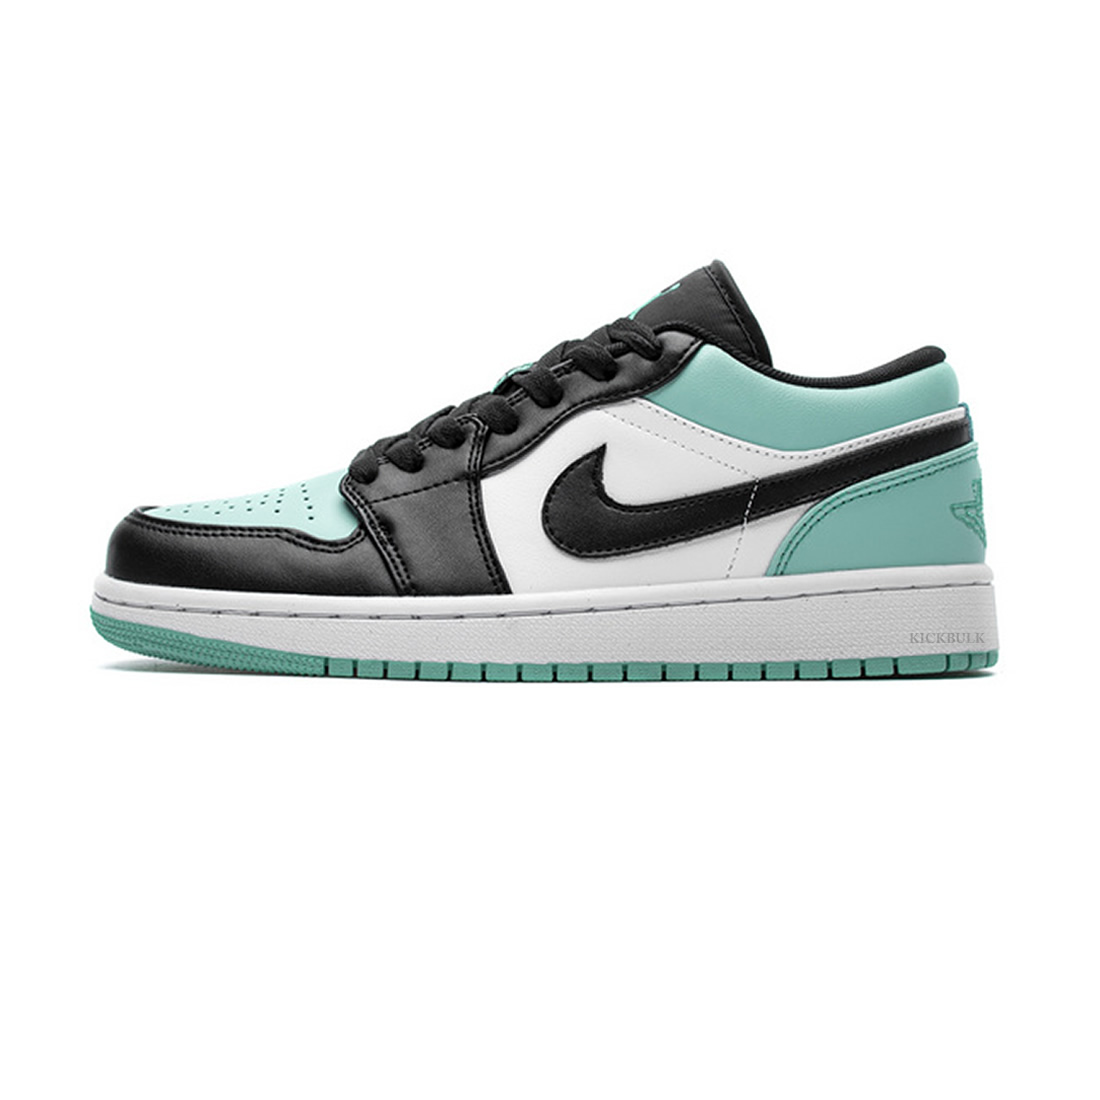 Nike Air Jordan 1 Low Emerald Toe 553558 117 1 - kickbulk.co